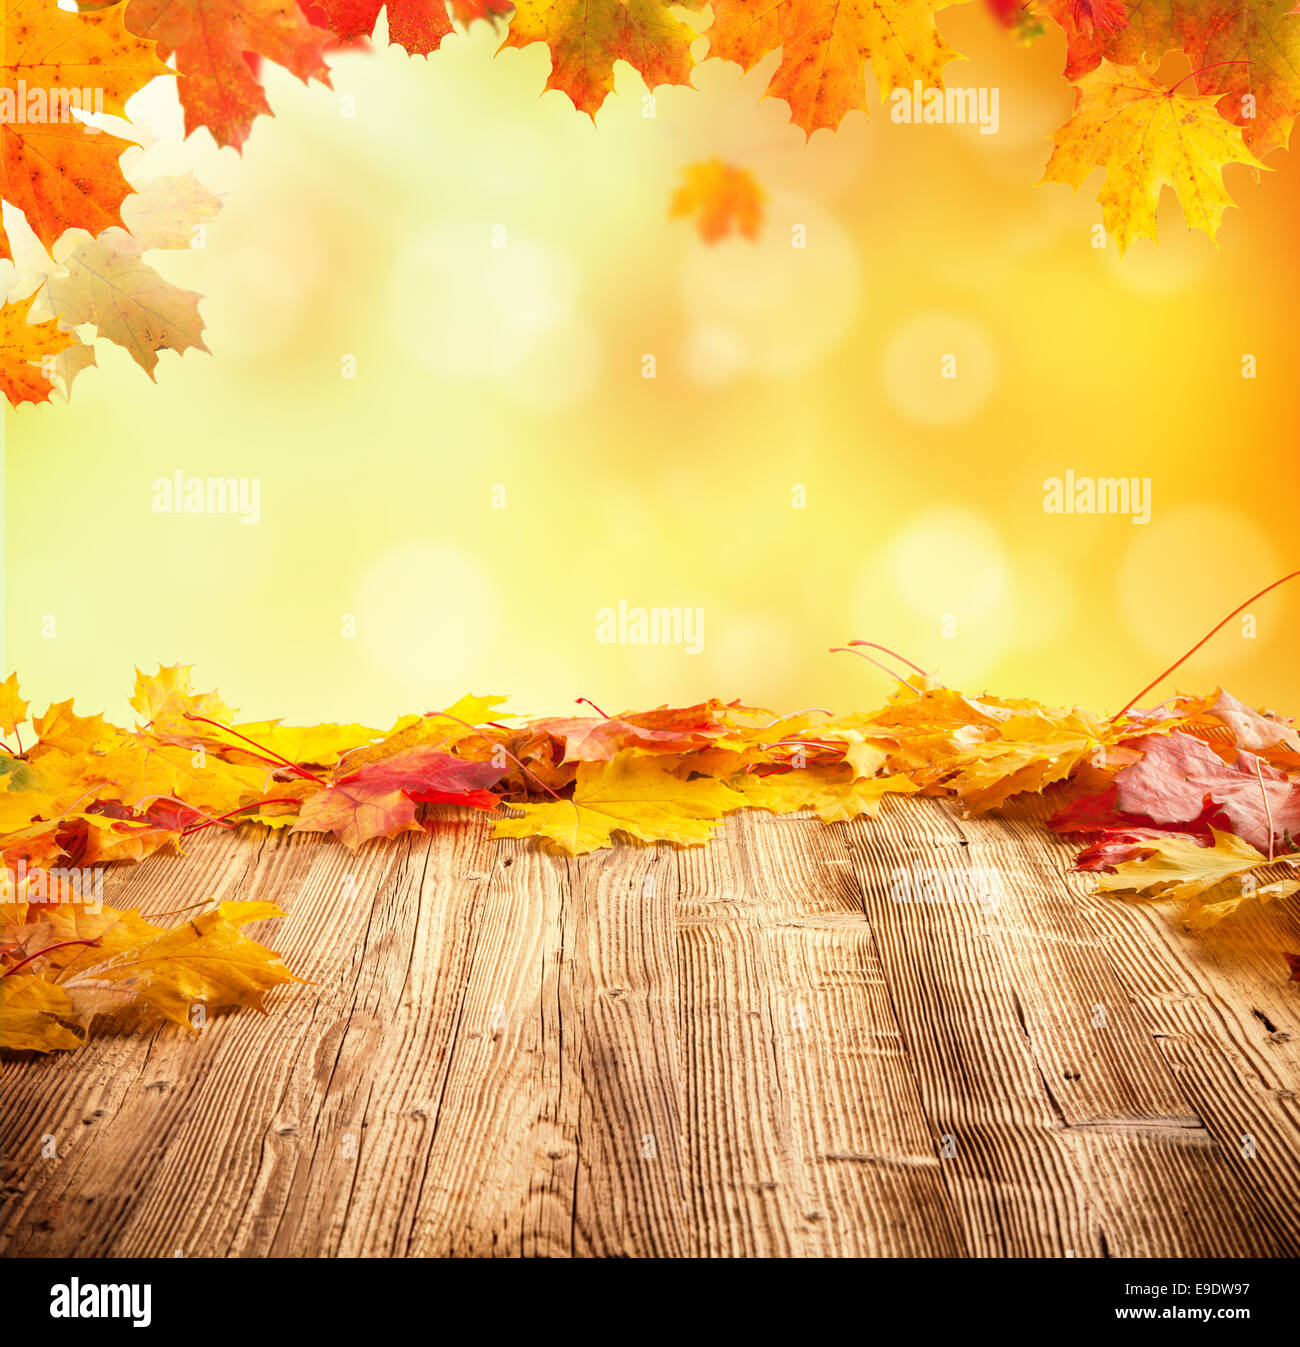 Concept d'automne vide avec planches en bois et les feuilles qui tombent Banque D'Images